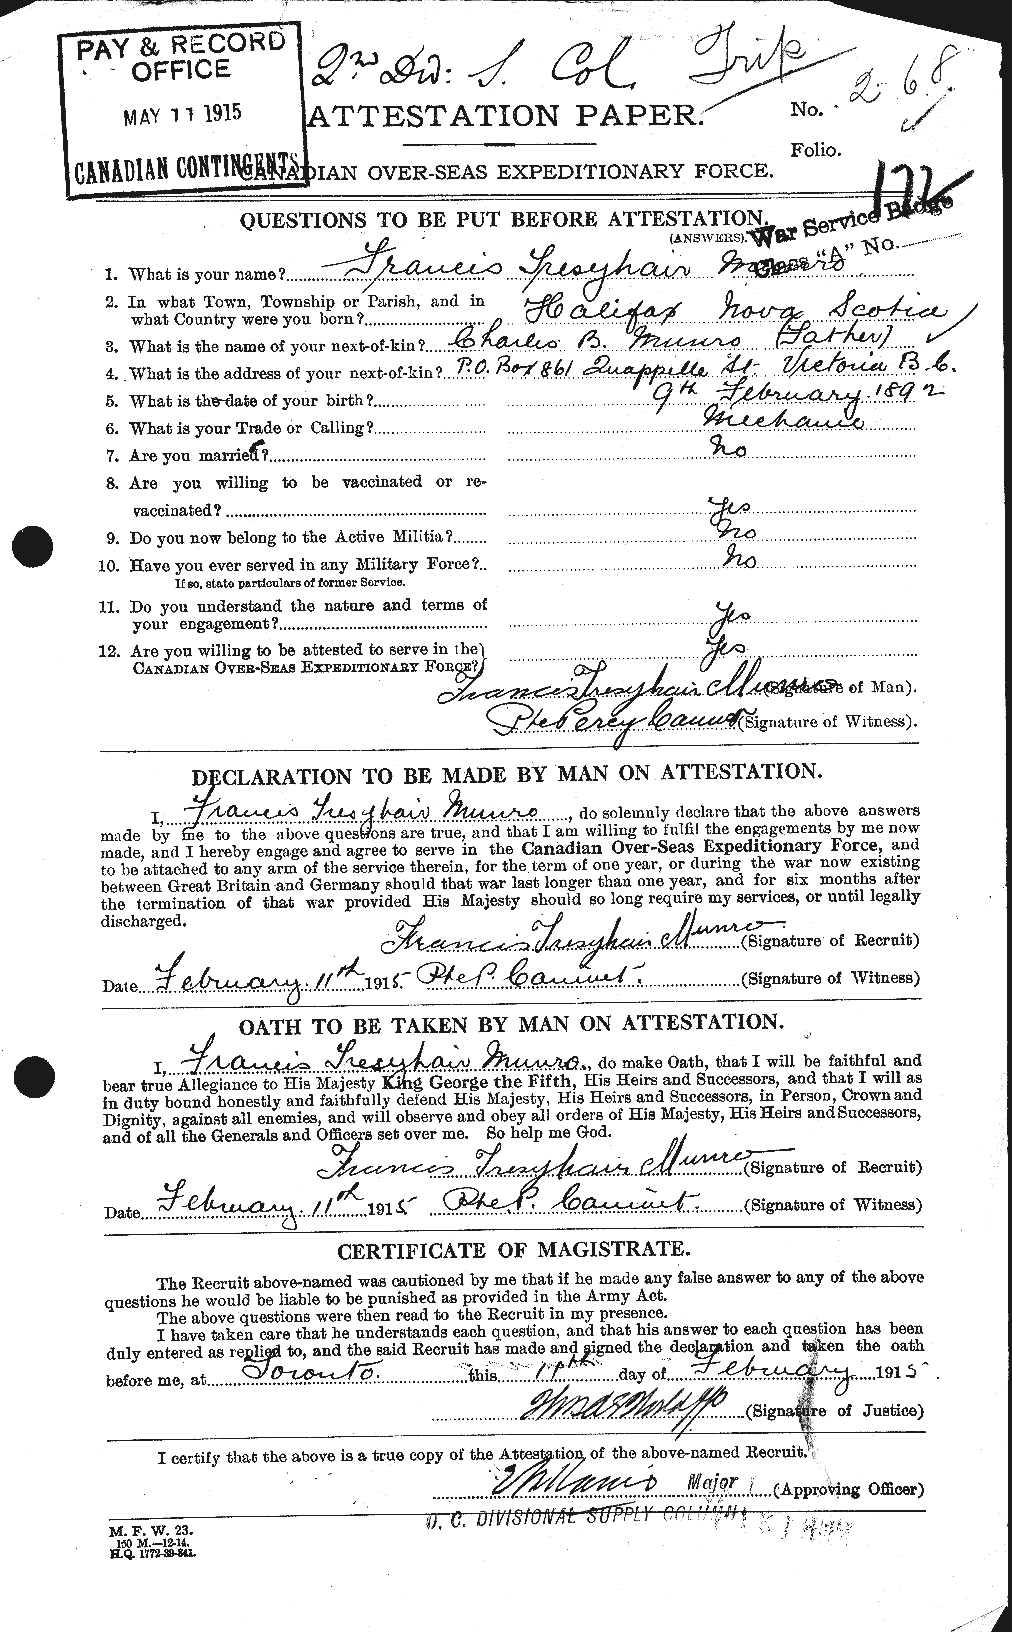 Dossiers du Personnel de la Première Guerre mondiale - CEC 513825a